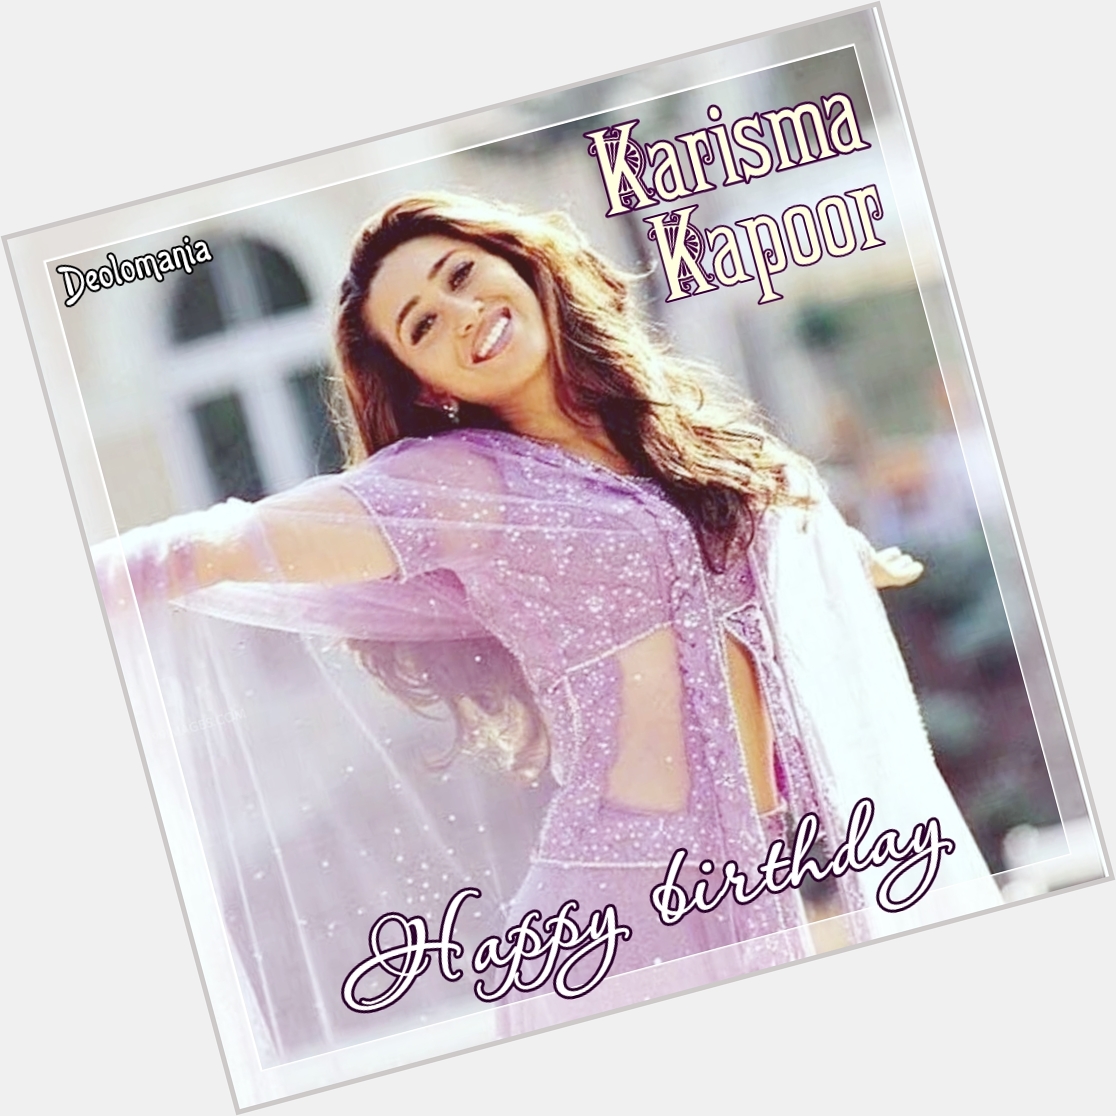  Happy birthday to gorgeous Karisma Kapoor     